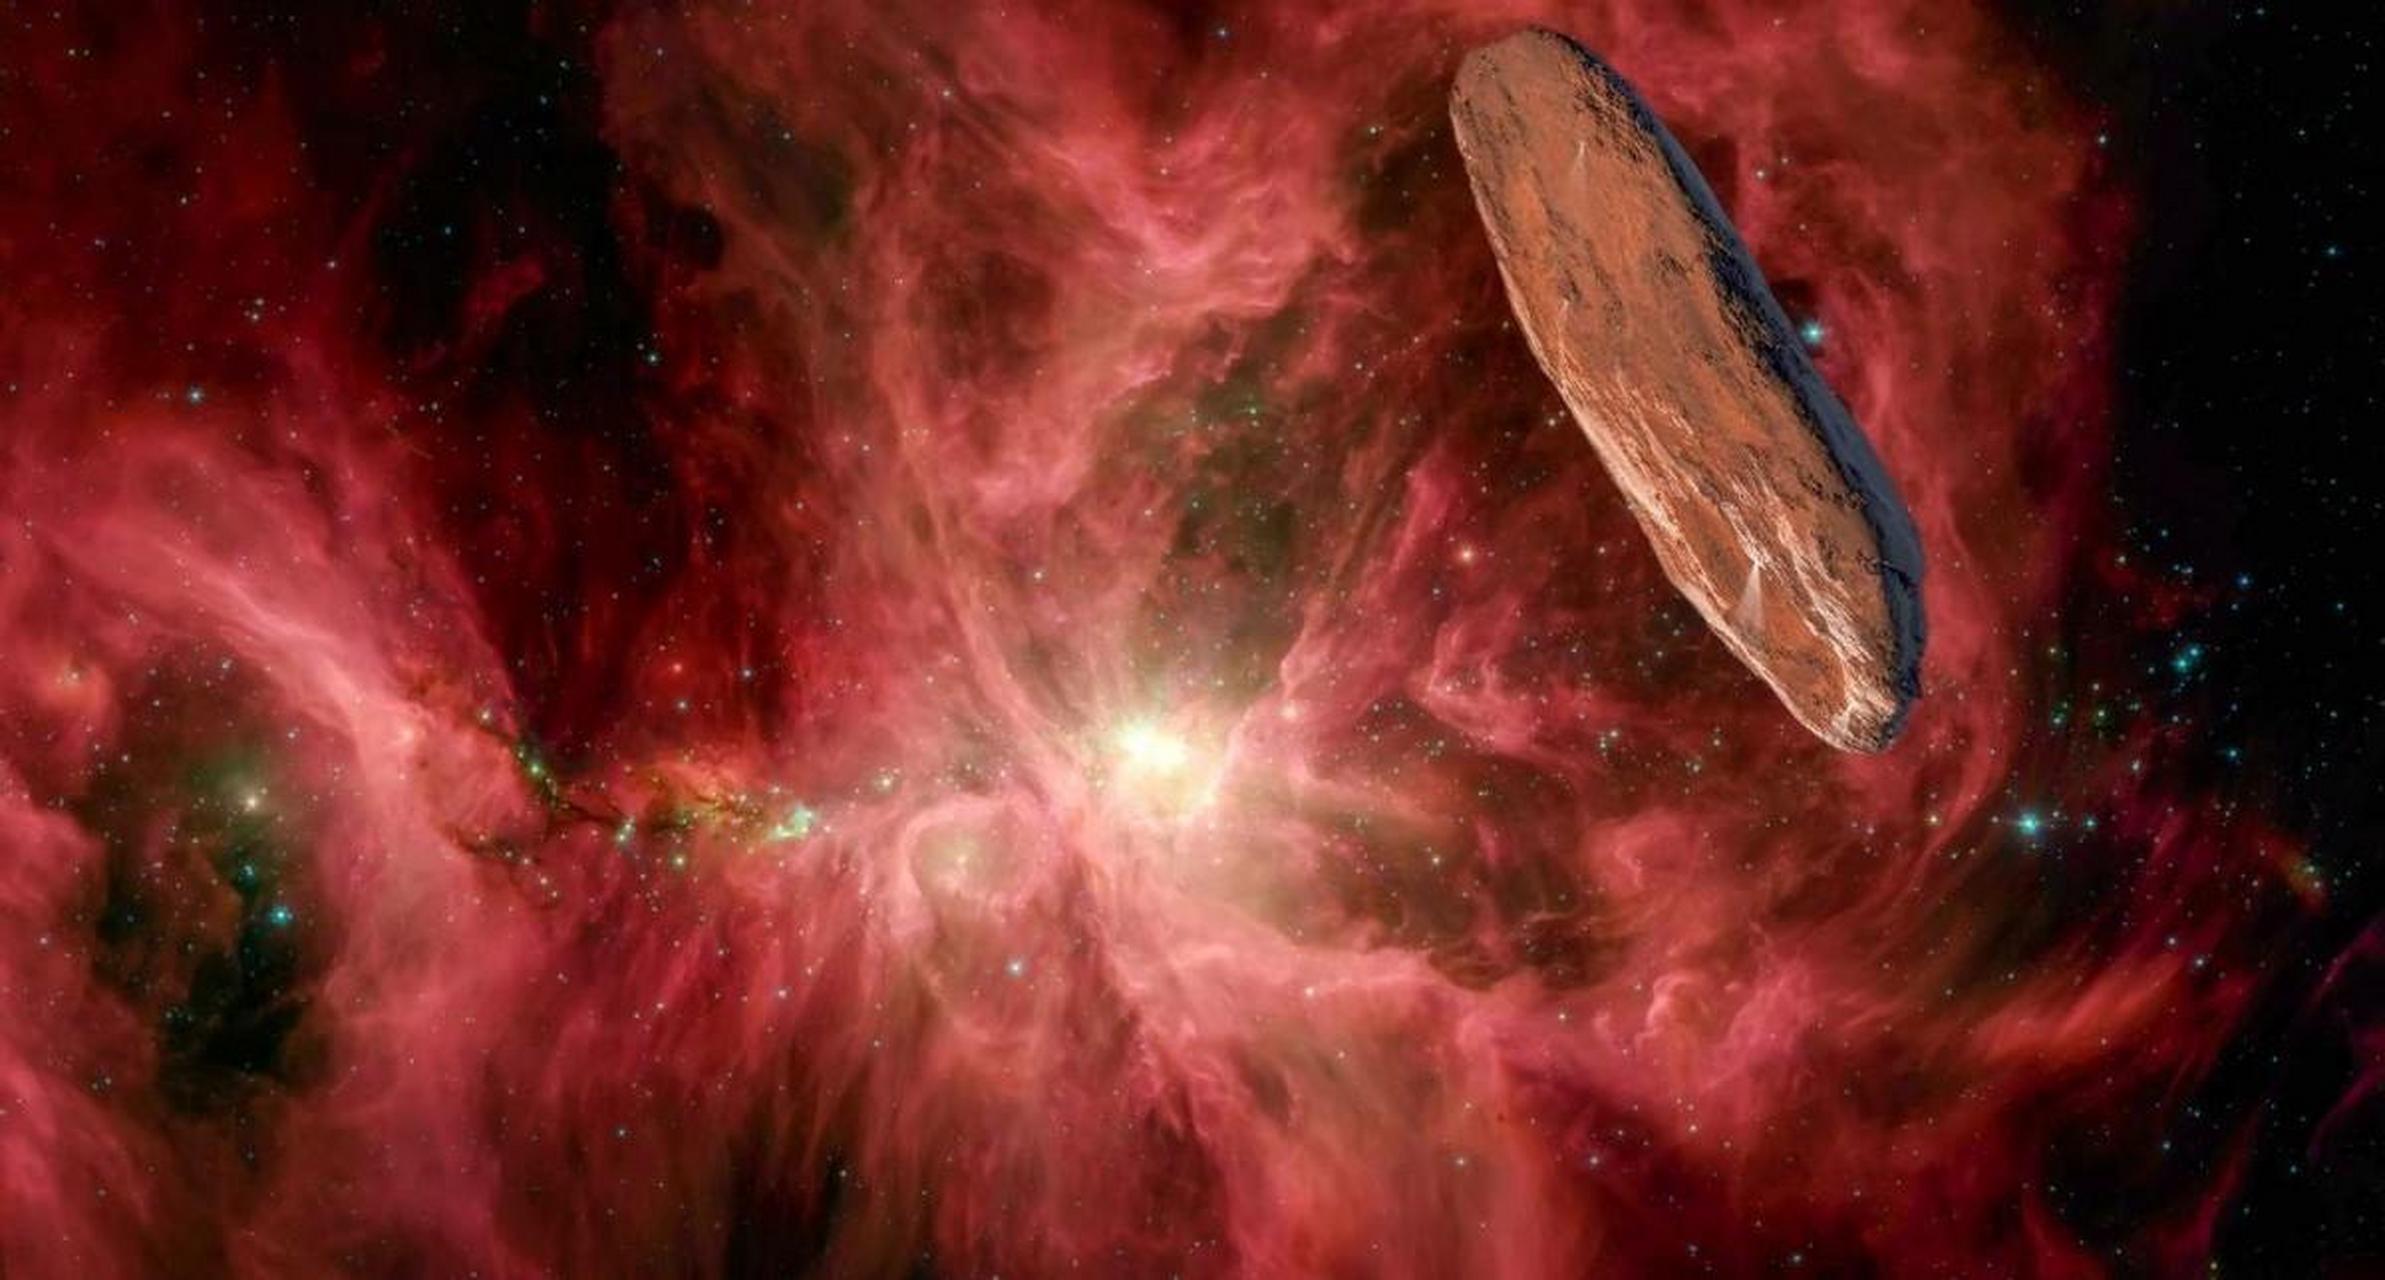 哈佛大学天文系主任阿维勒布补充道,如果奥陌陌是一个光帆飞船,太阳系